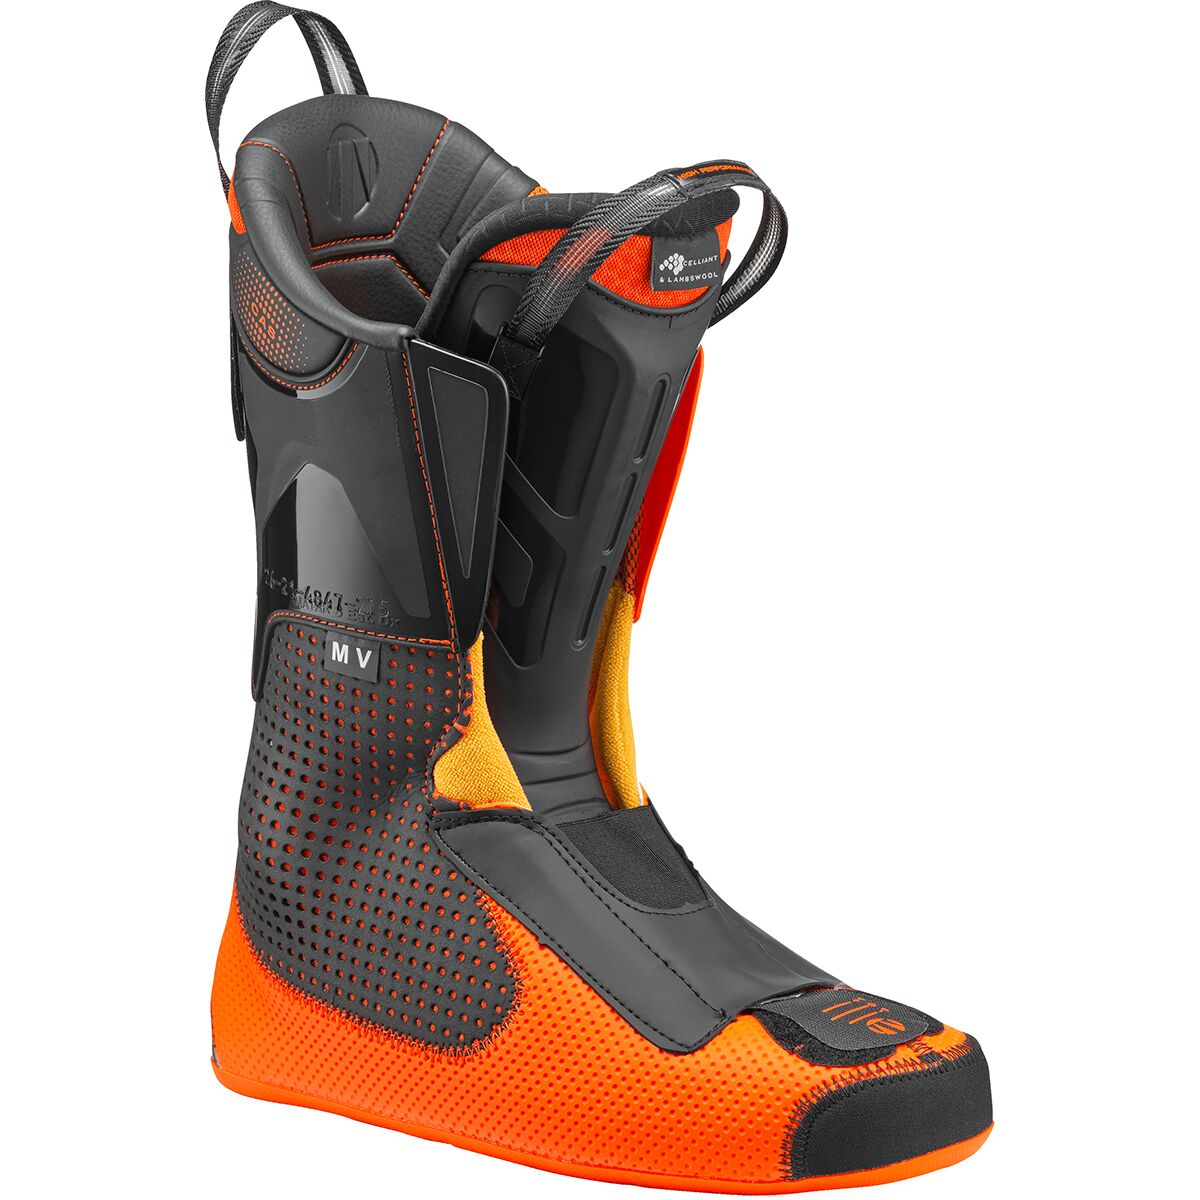 Tecnica Mach1 MV 120 Ski Boots - Men's - 2023/2024